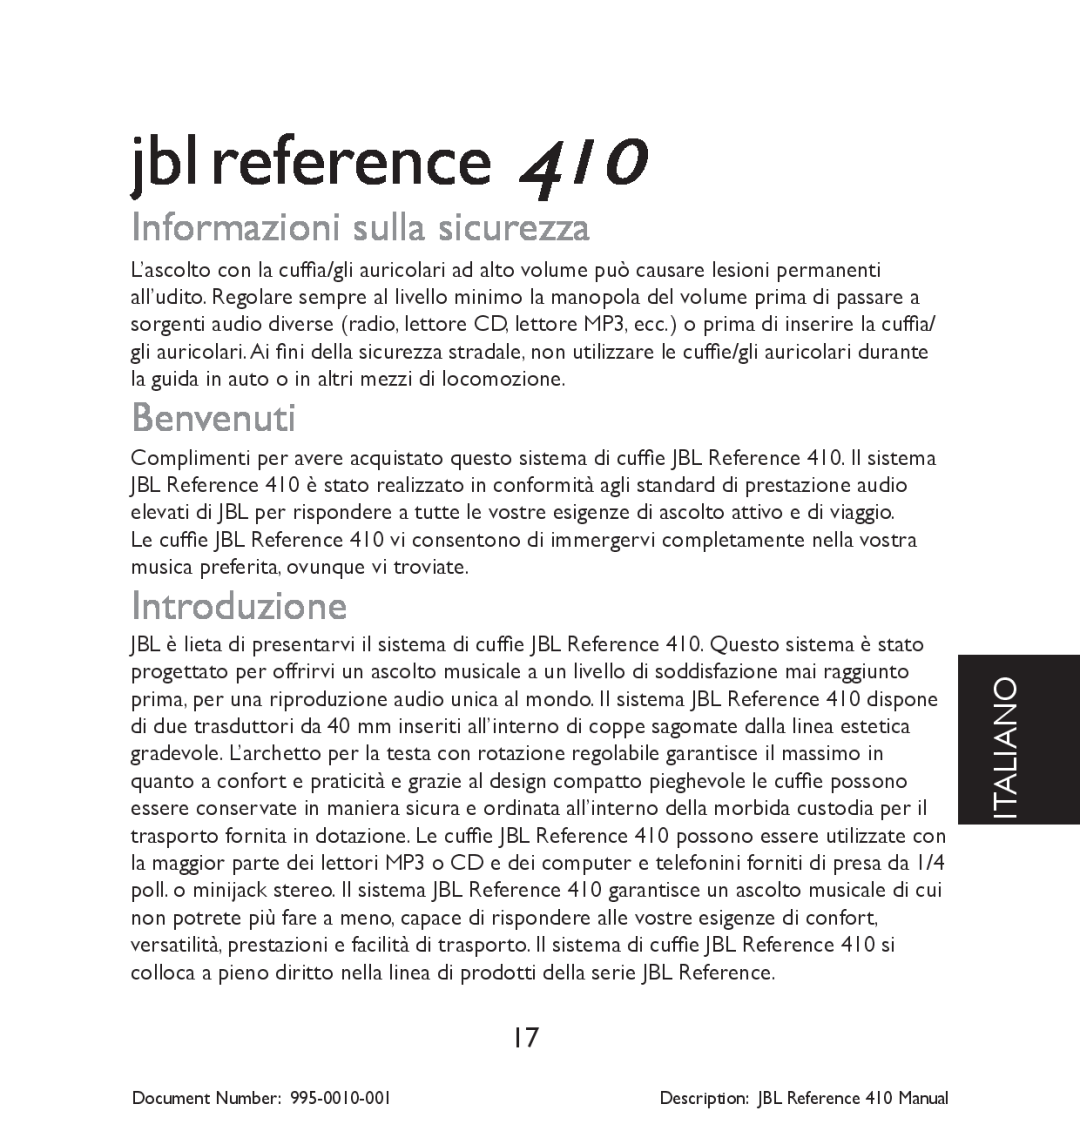 JBL 410 manual Informazioni sulla sicurezza, Benvenuti, Introduzione, Italiano, jbl reference 